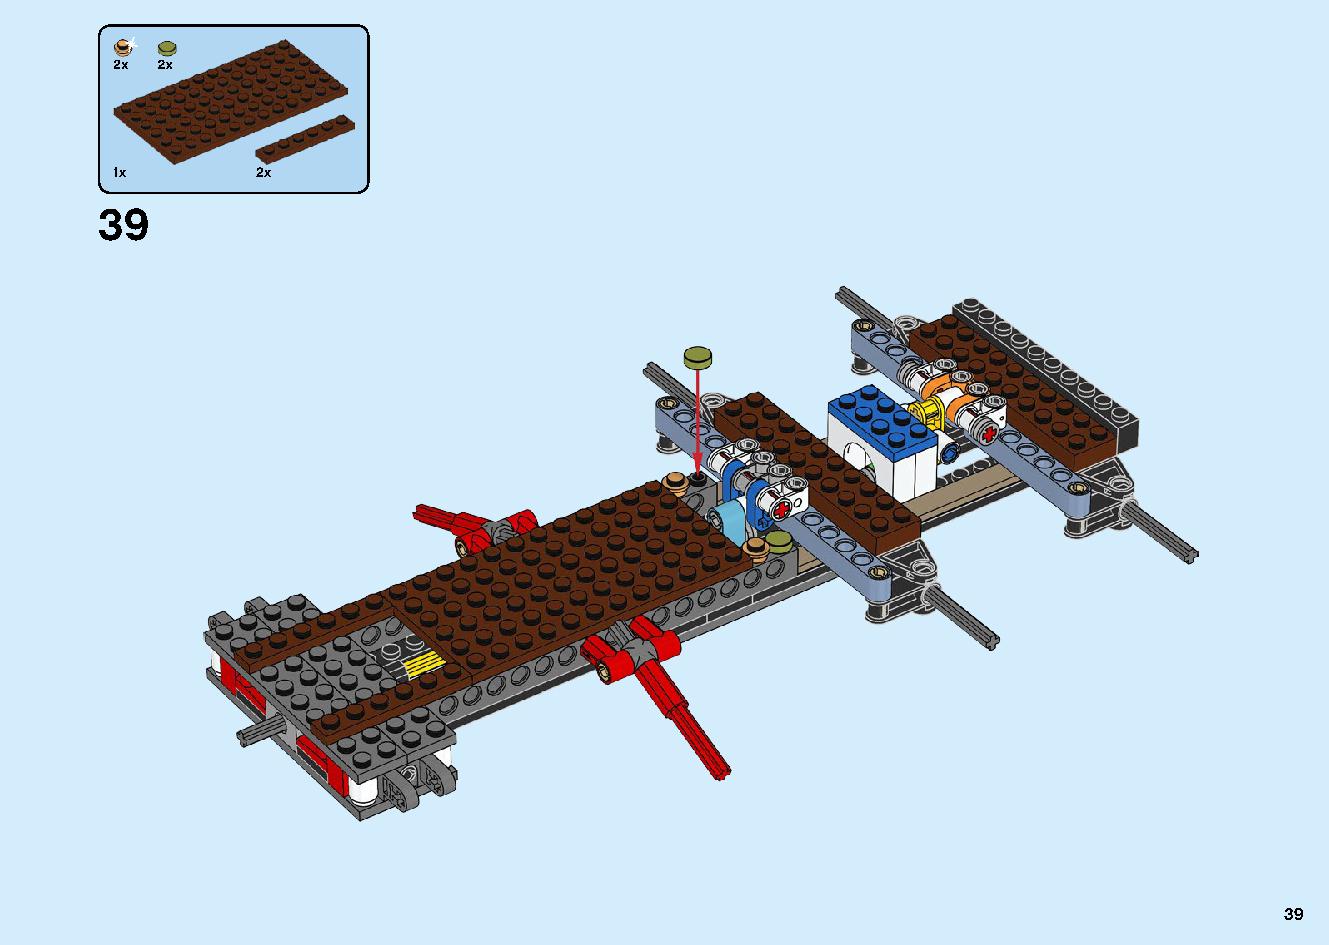 陸上戦艦バウンティ号 70677 レゴの商品情報 レゴの説明書・組立方法 39 page